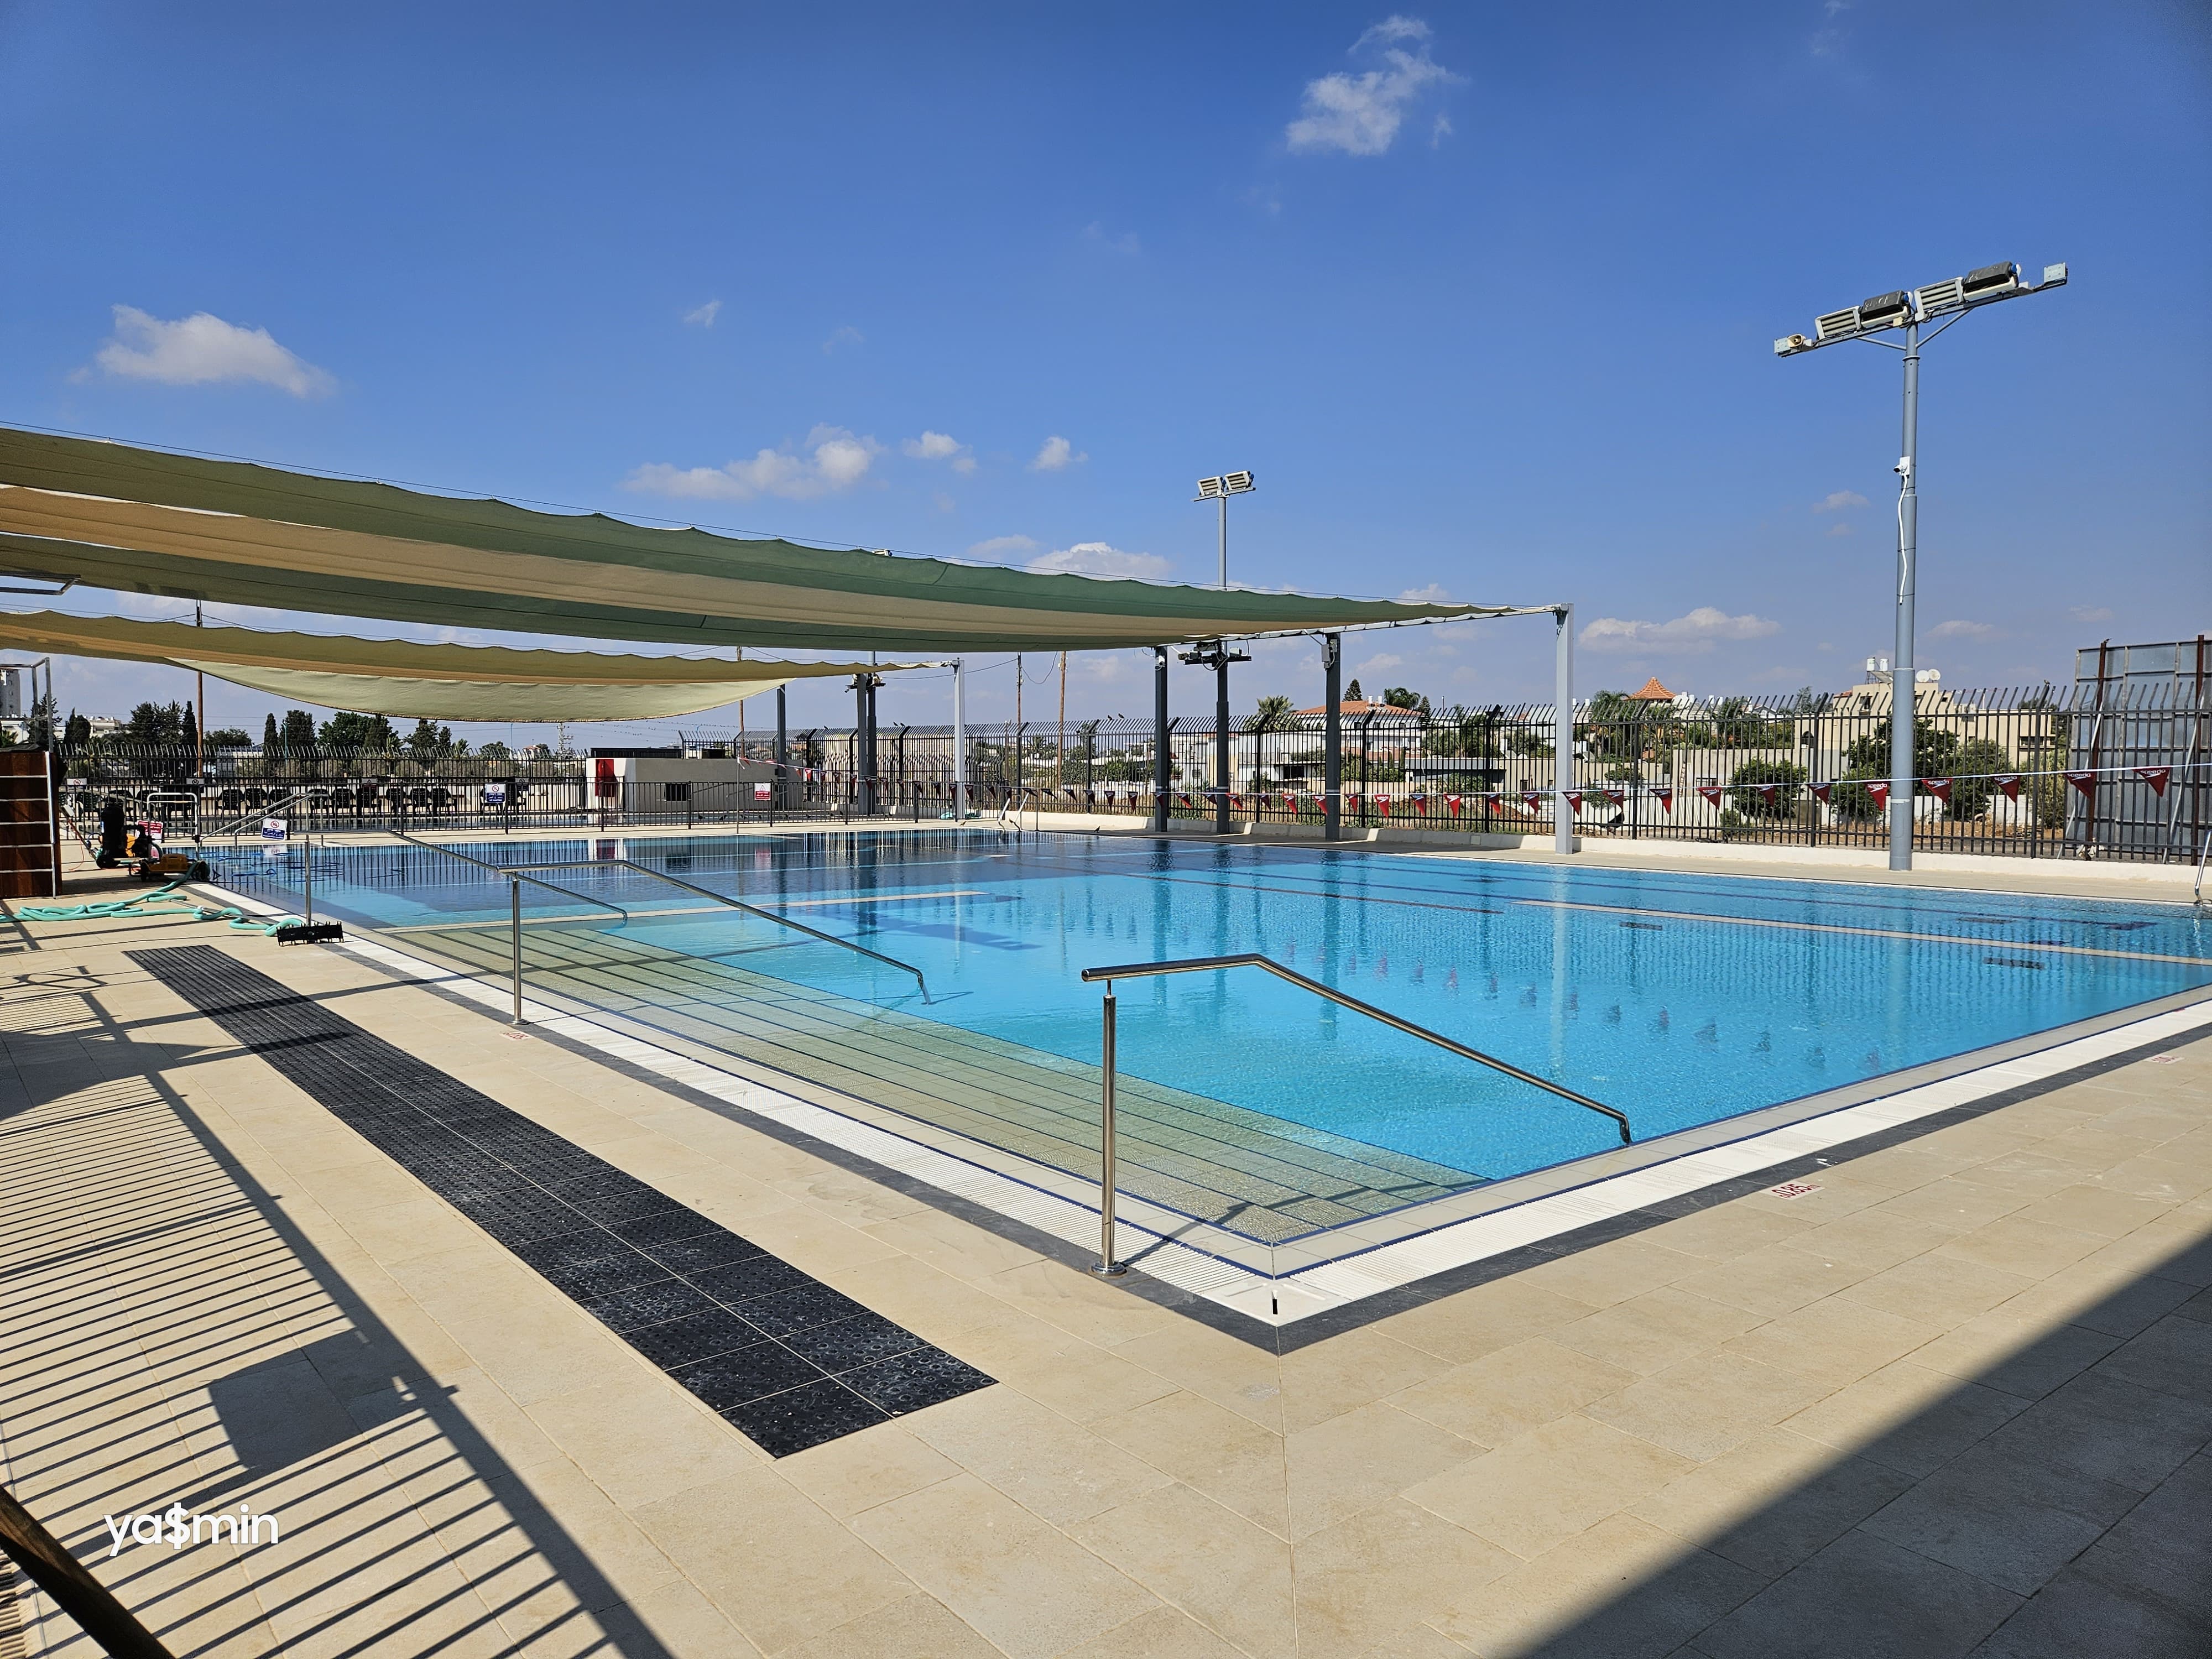  اللد: بركة سباحة وحدائق وصالة ألعاب رياضية .. افتتاح مجمع هولمز بليس شنير 